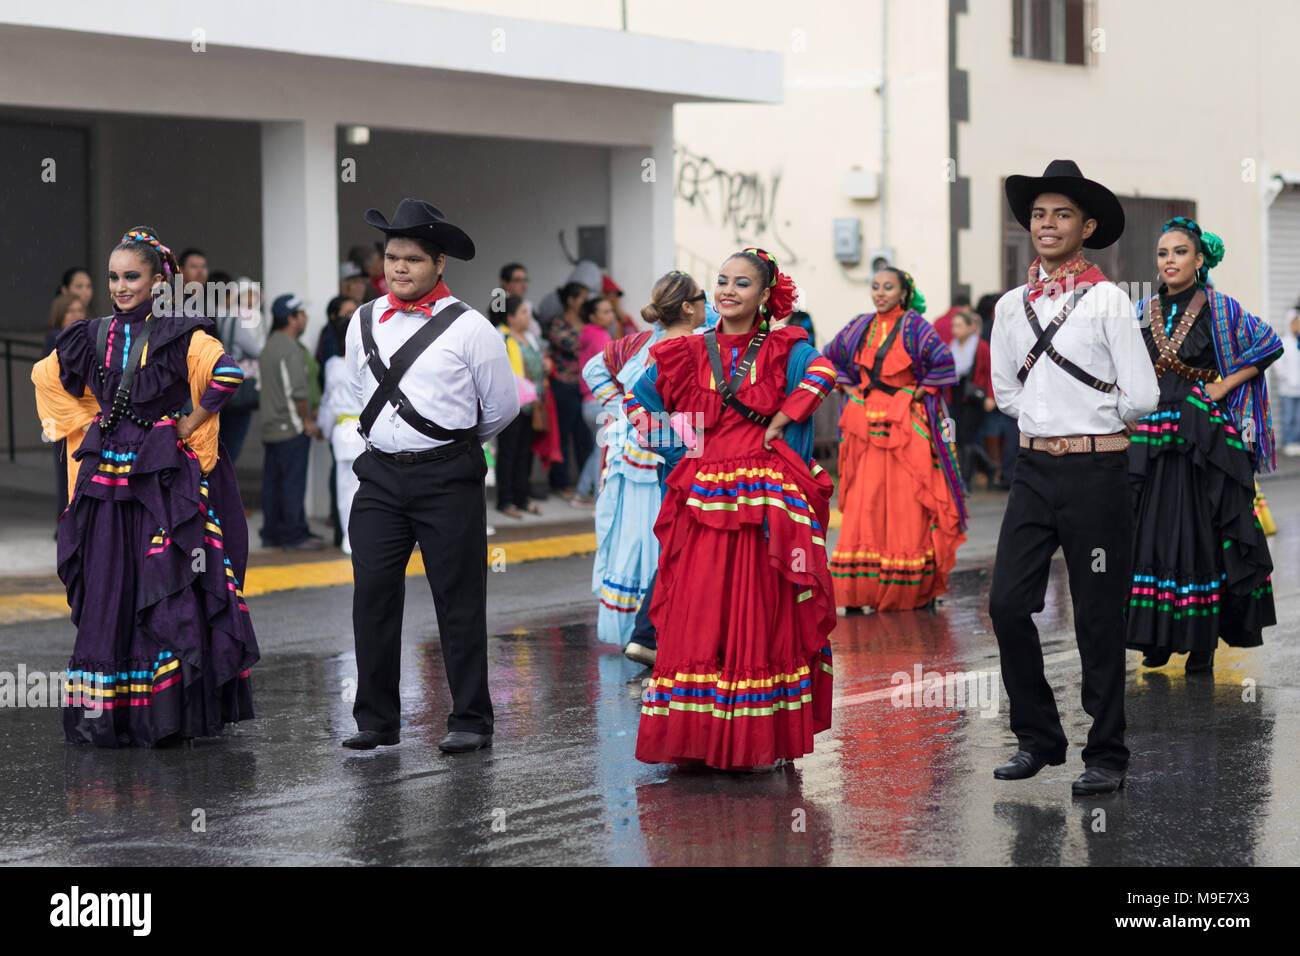 H. Matamoros, Tamaulipas, Mexique - 20 novembre 2017 - Le défilé le 20 novembre commémore le début de la révolution mexicaine de 1910 contre Porfiri Banque D'Images